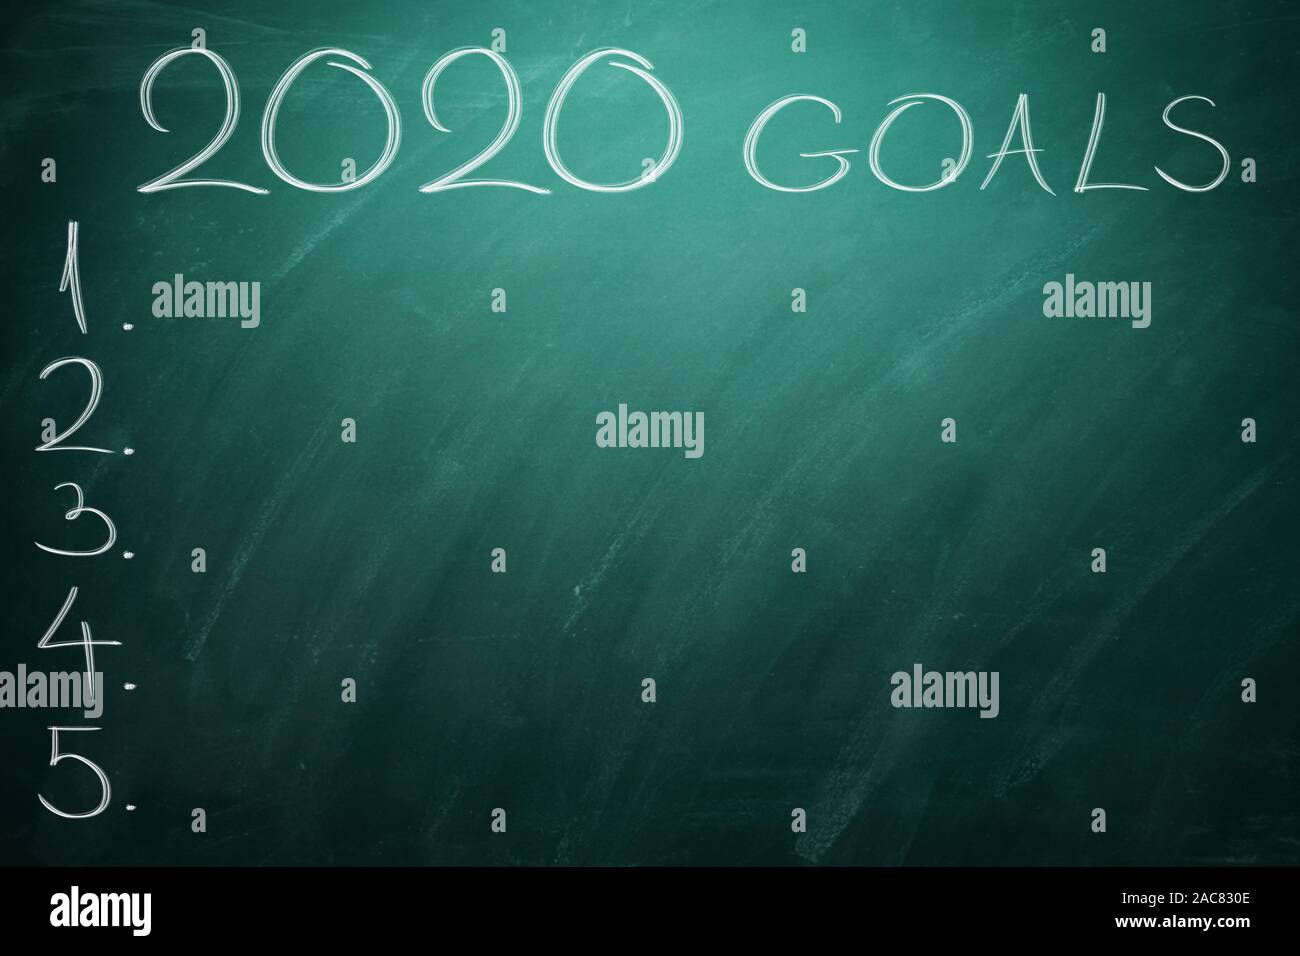 2020 Gli obiettivi sulla scheda verde. Lavagna. Foto Stock